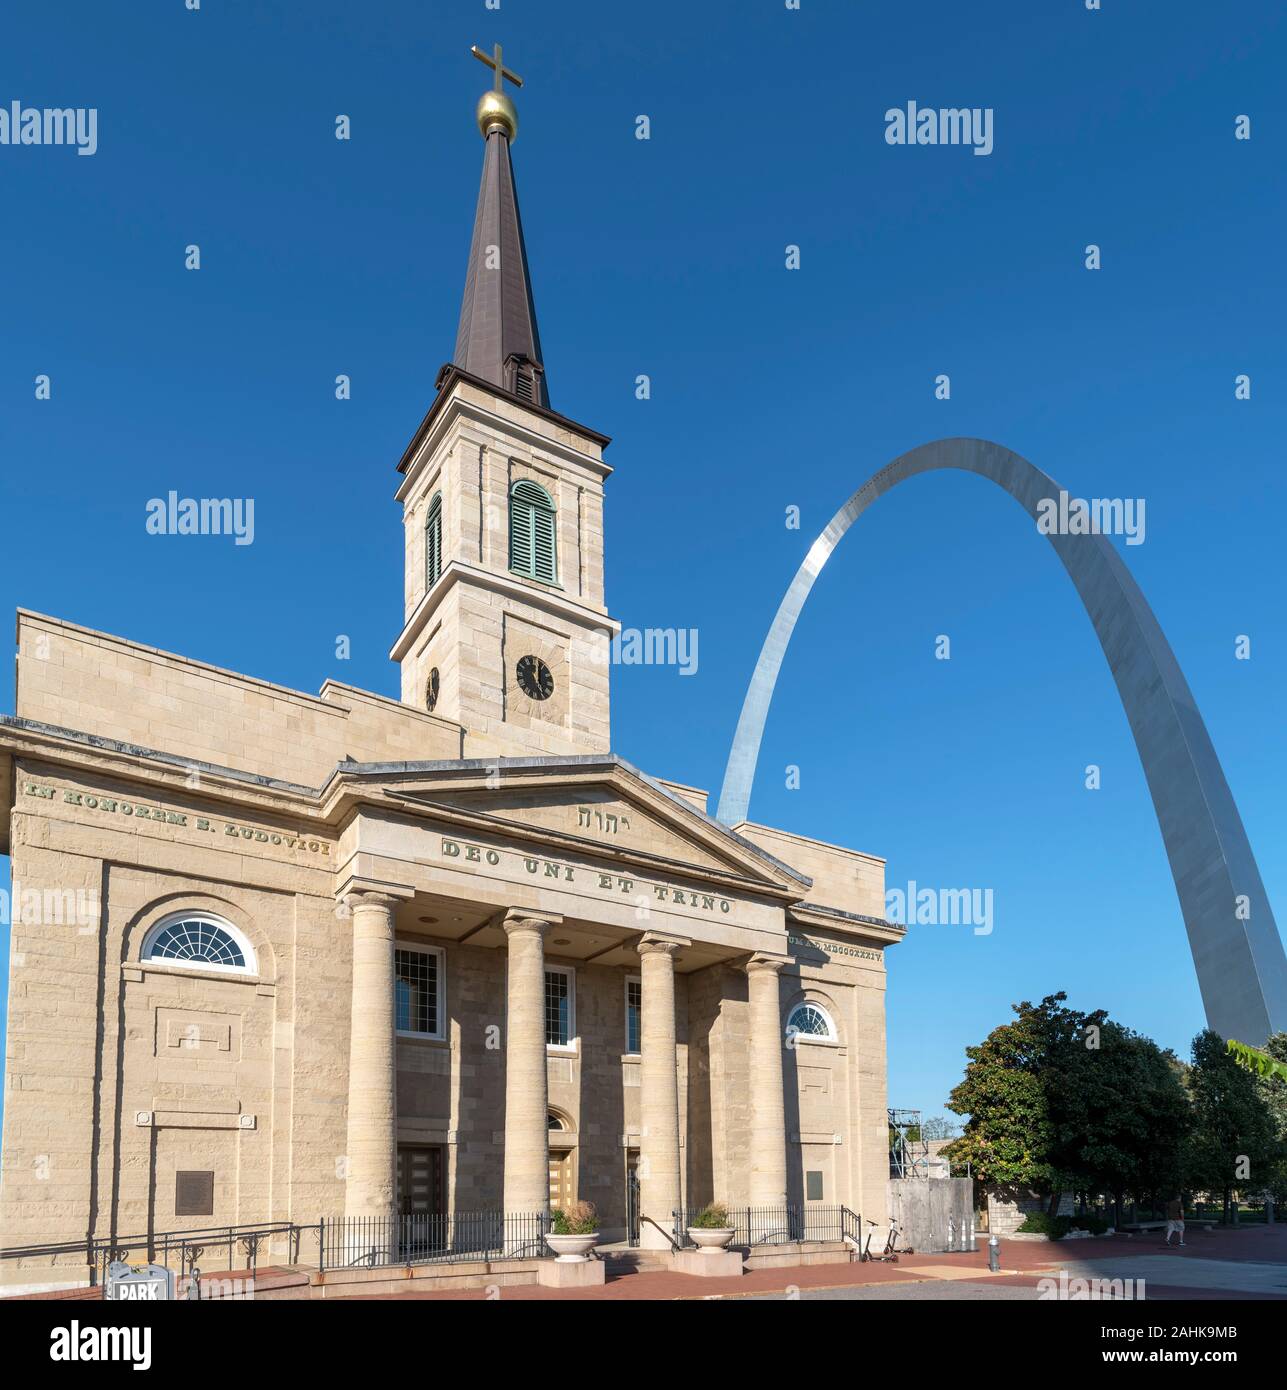 La vecchia cattedrale (Basilica di San Luigi, re di Francia) con il Gateway Arch dietro, Saint Louis, Missouri, Stati Uniti d'America Foto Stock